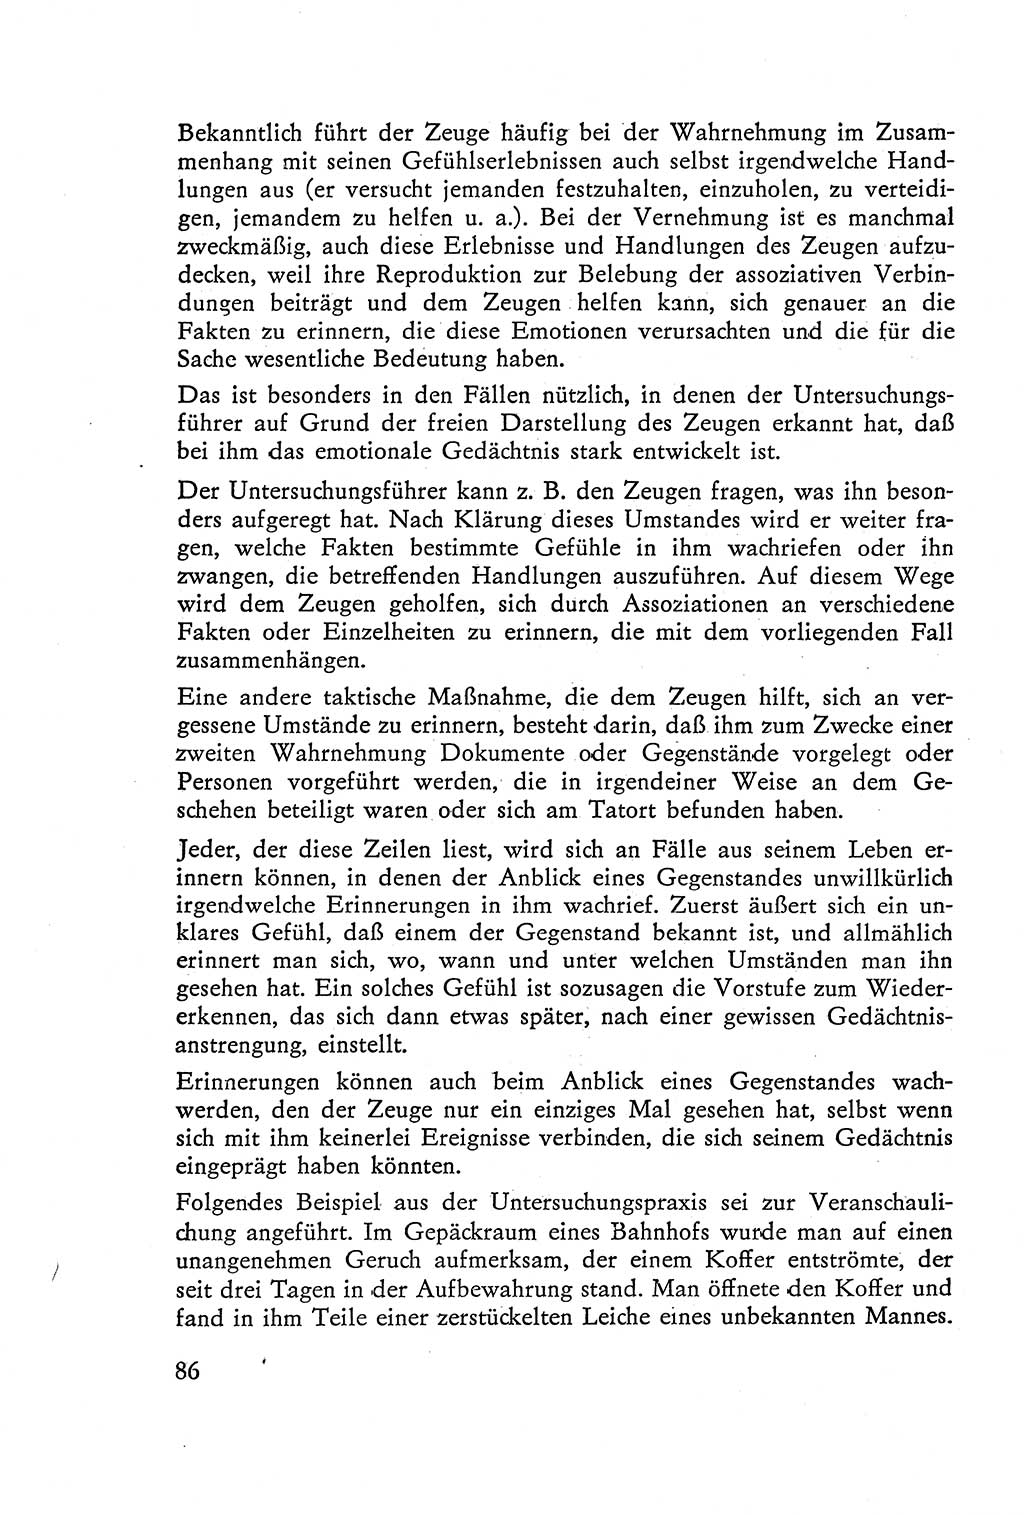 Die Vernehmung [Deutsche Demokratische Republik (DDR)] 1960, Seite 86 (Vern. DDR 1960, S. 86)